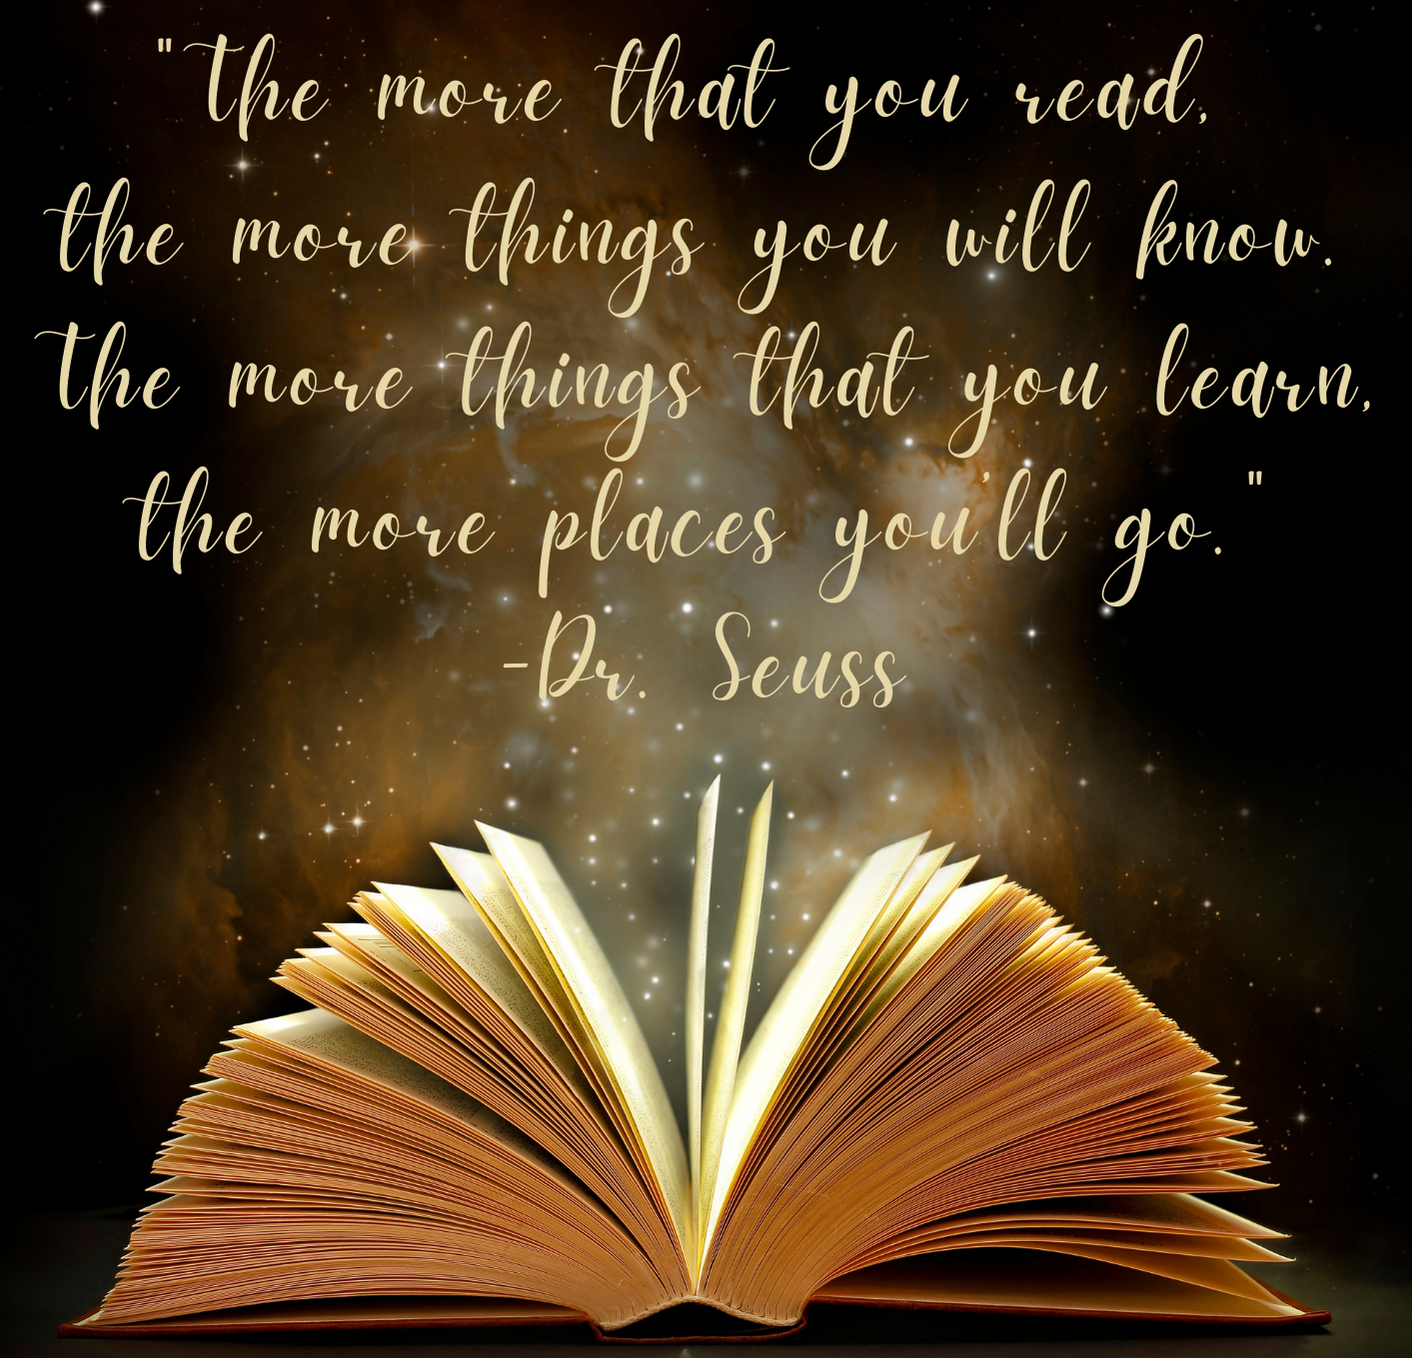 Dr Seuss, Book, Stars